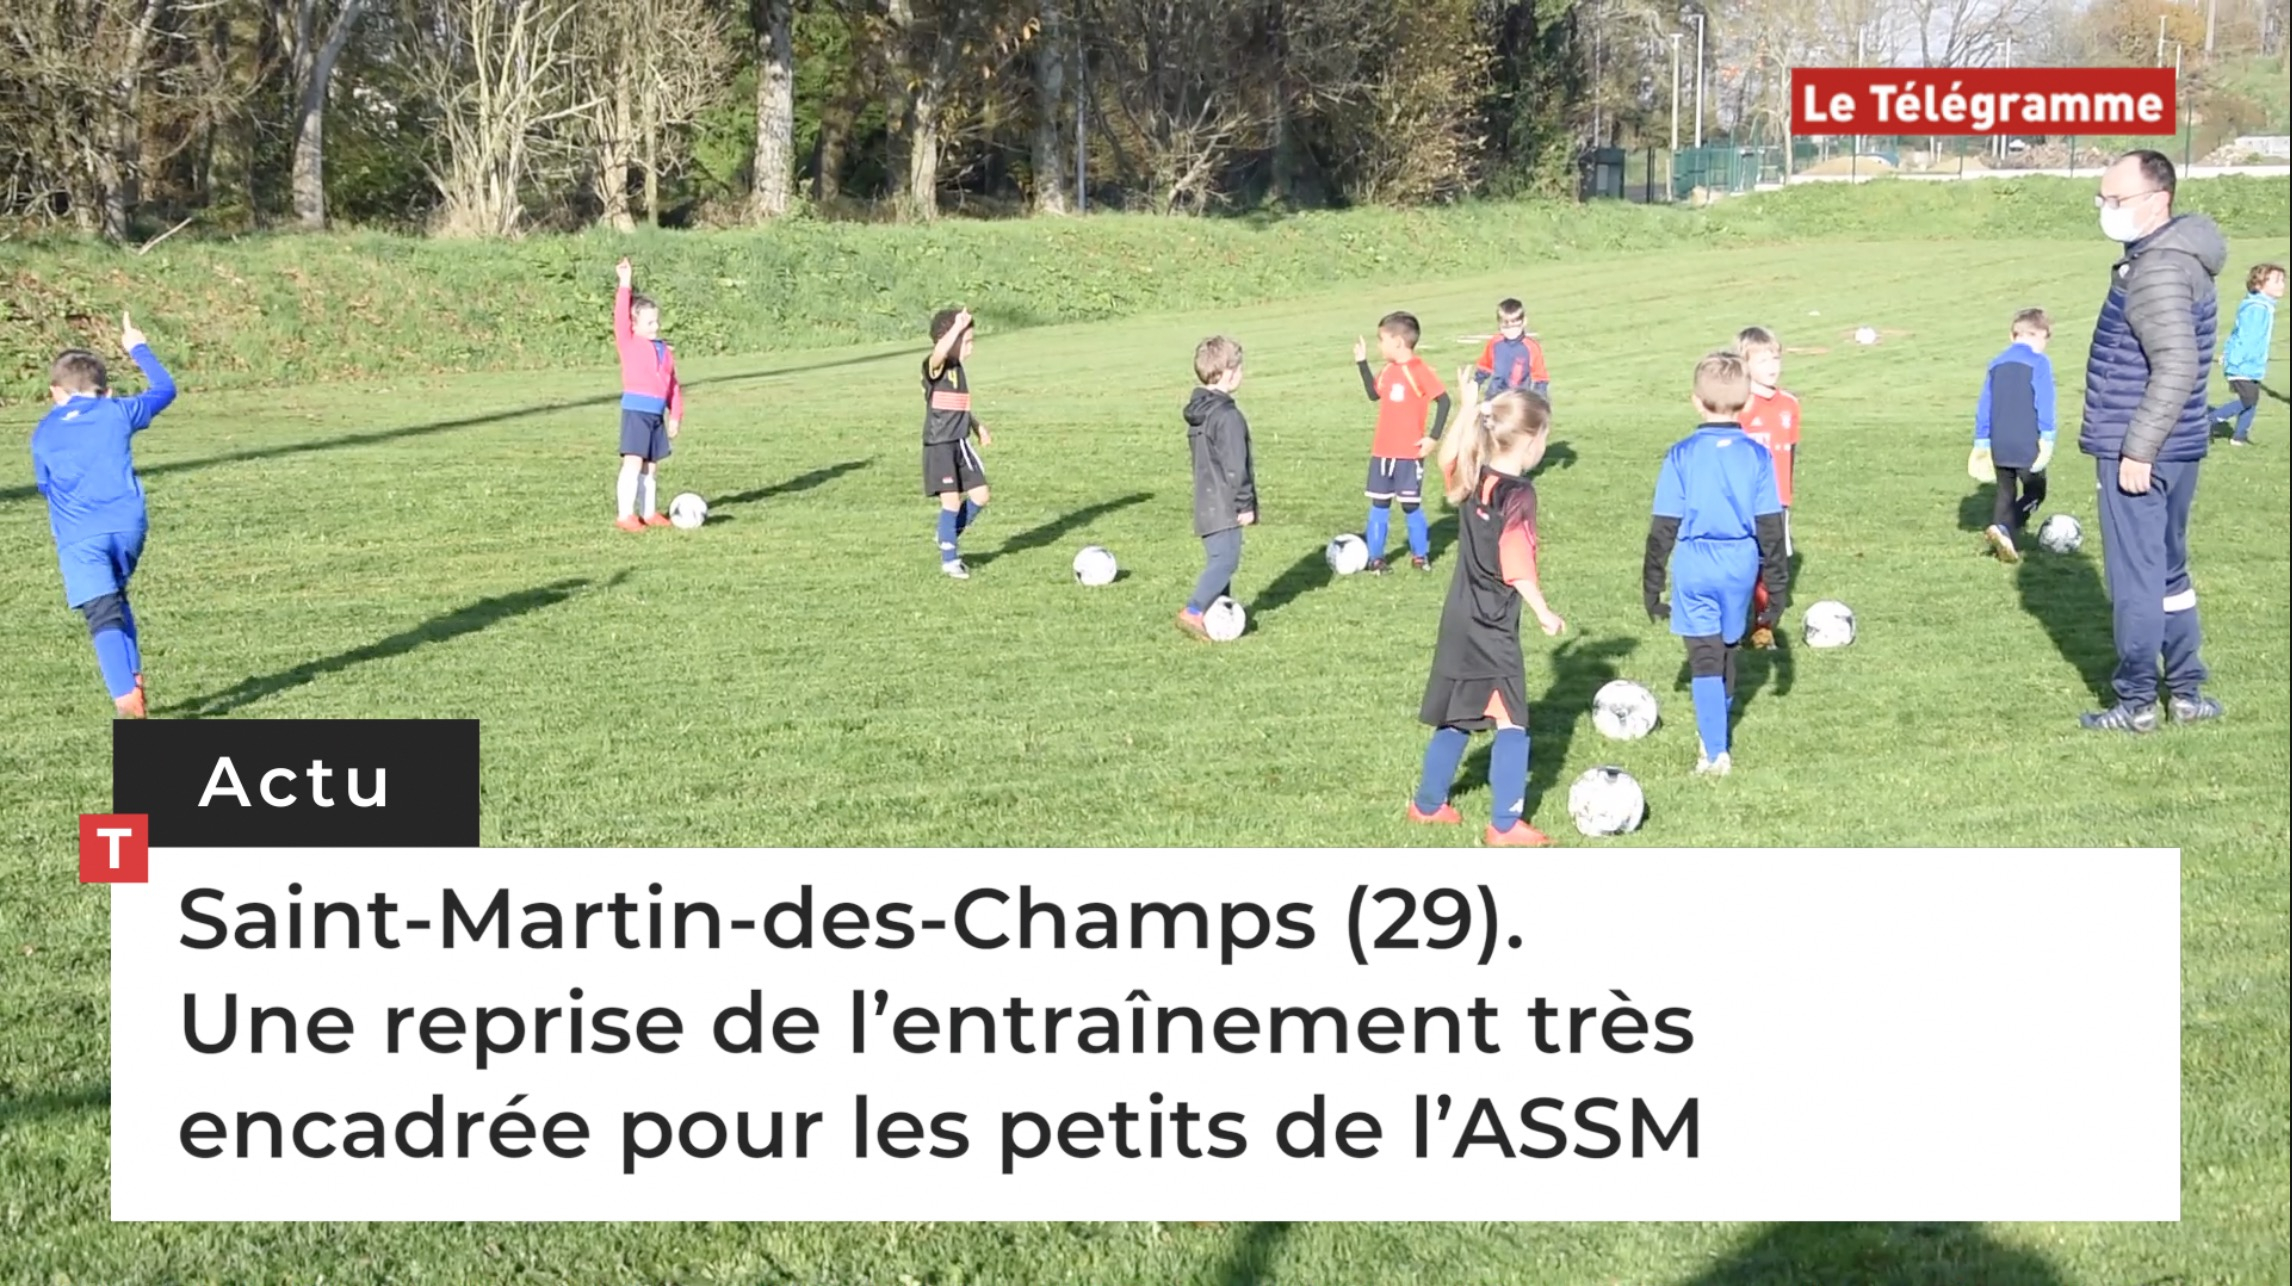 Saint-Martin-des-Champs (29). Une reprise de l’entraînement très encadrée pour les petits de l’ASSM (Le Télégramme)